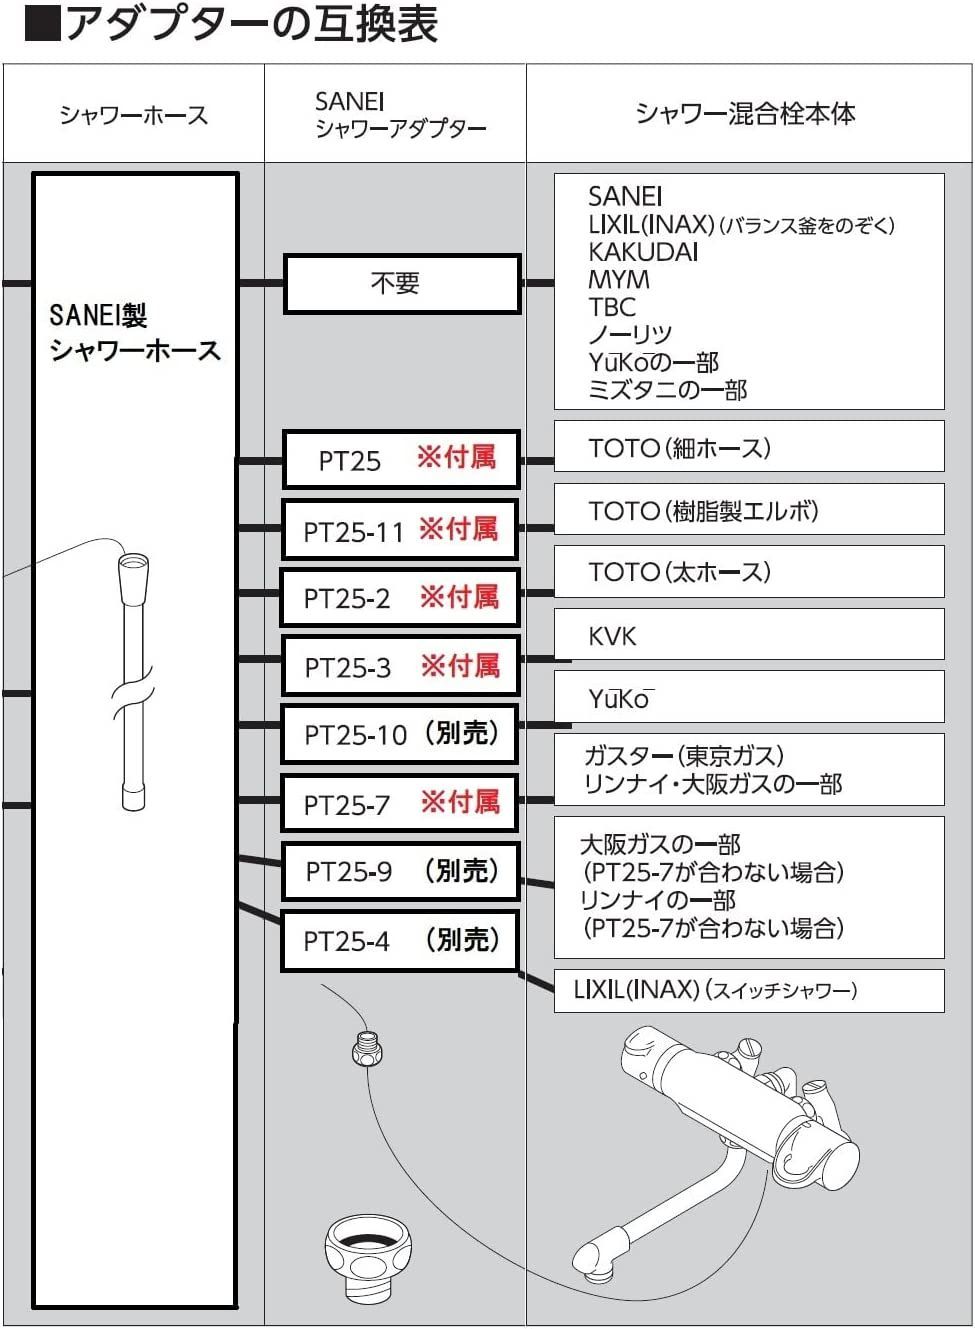 人気の定番 カクダイ KAKUDAI シャワーホースセット 366-605